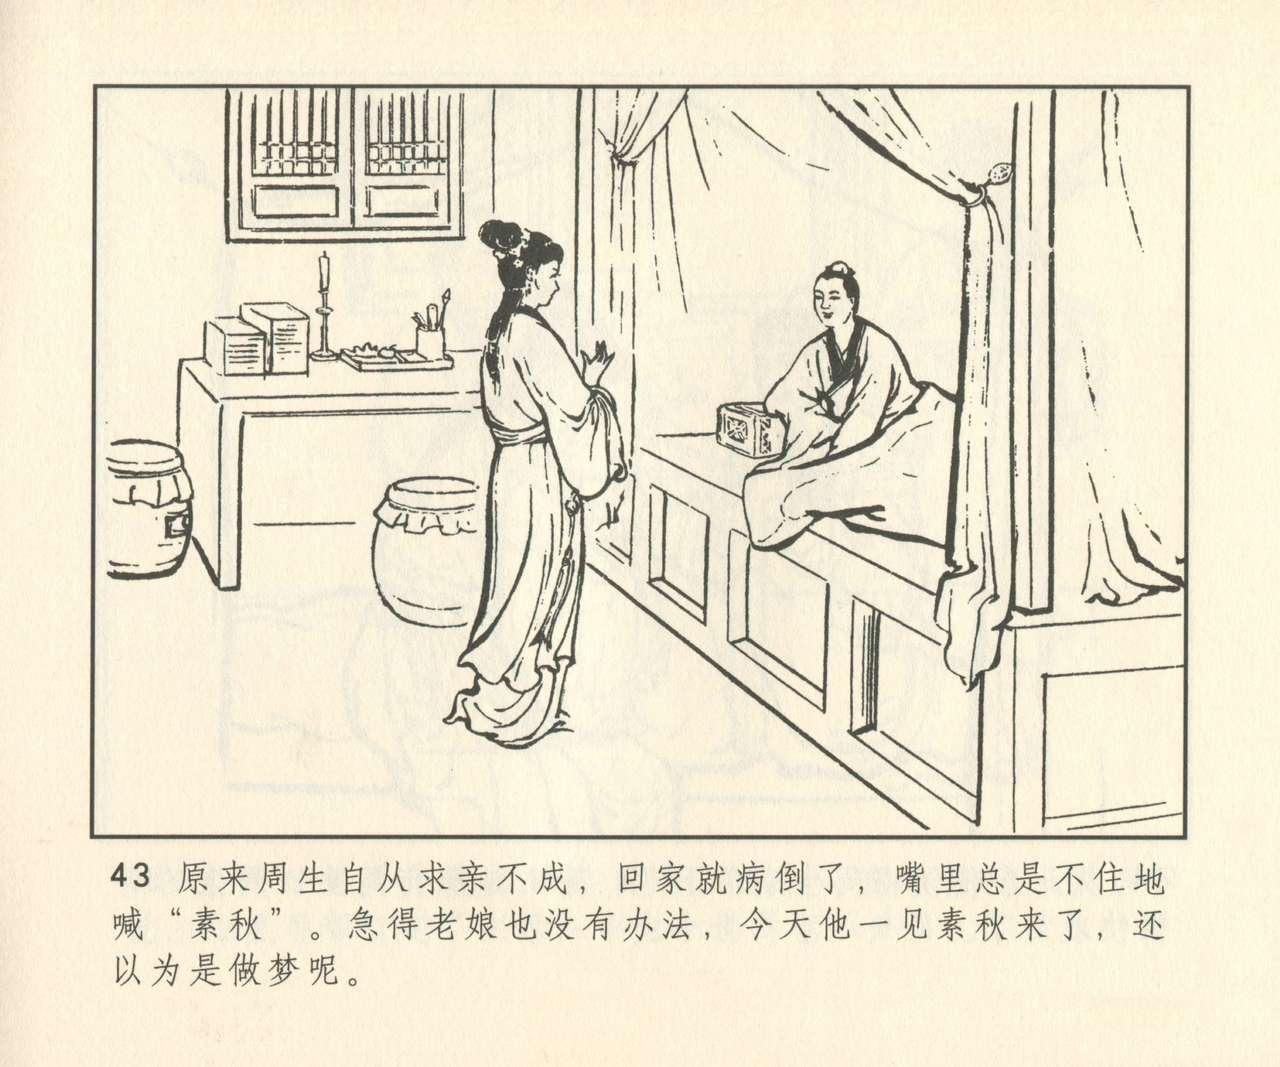 聊斋志异 张玮等绘 天津人民美术出版社 卷二十一 ~ 三十 323